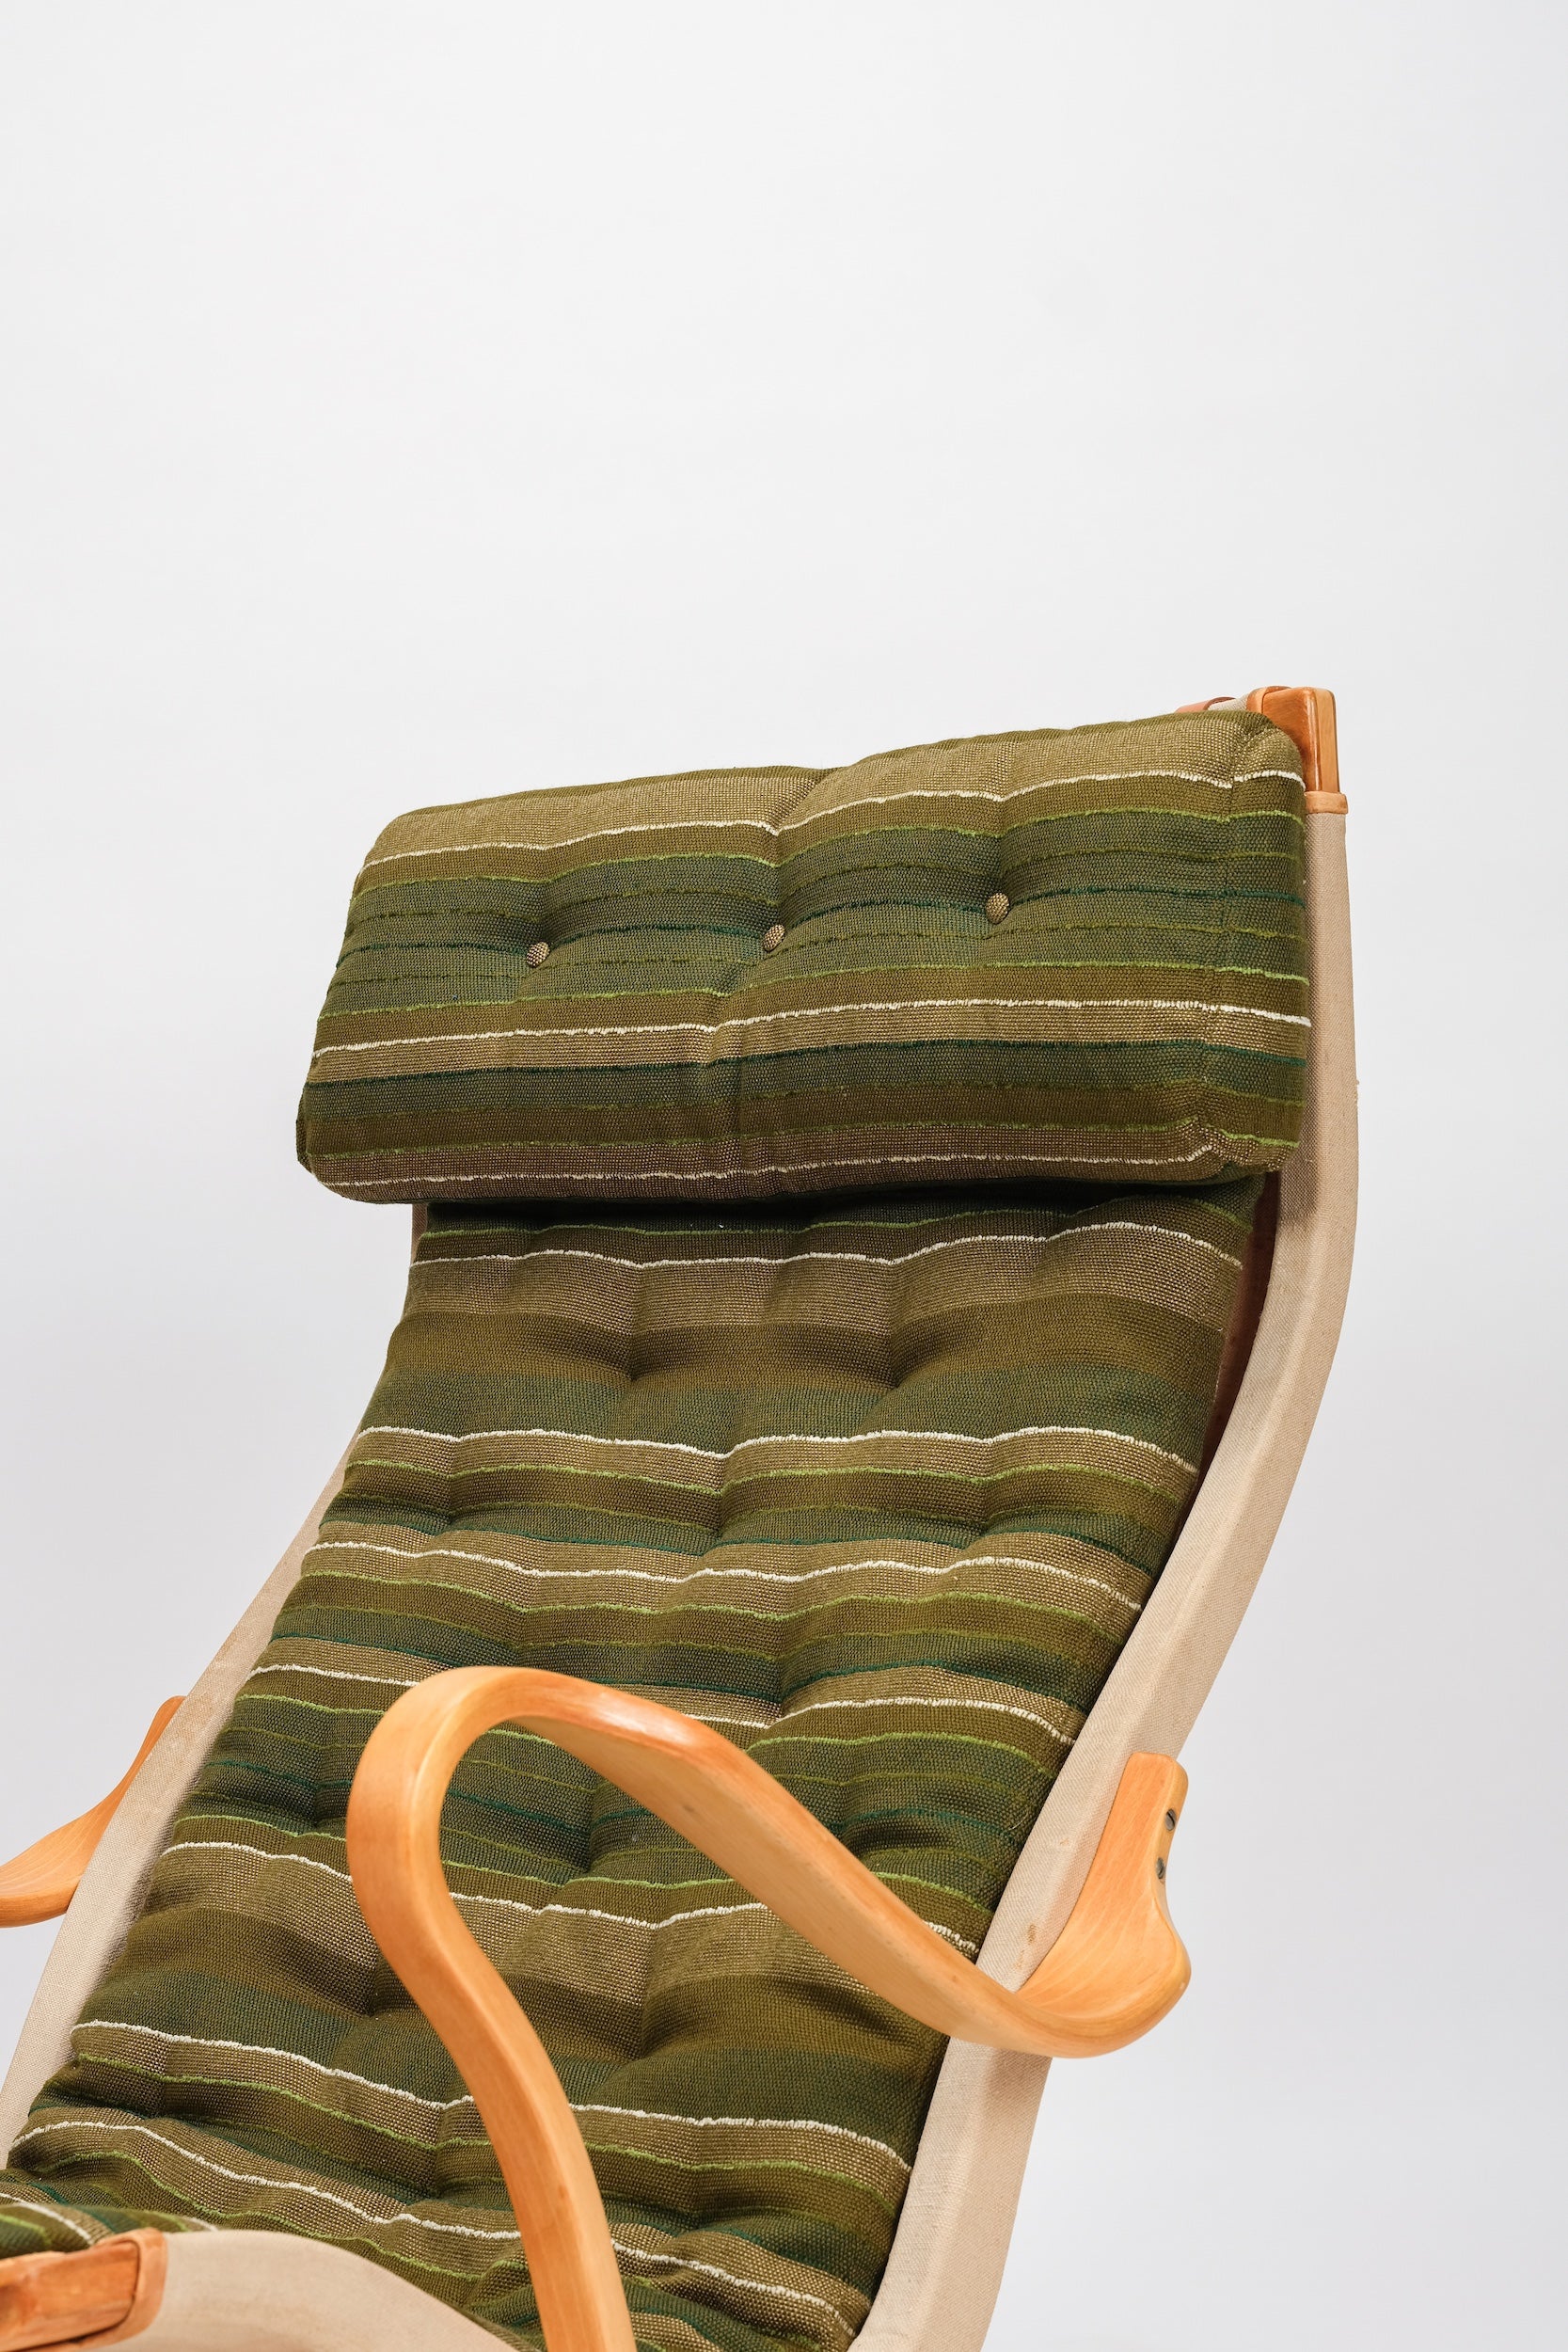 Bruno Mathsson, Lounge Chair 'Pernilla', Dux, 60s